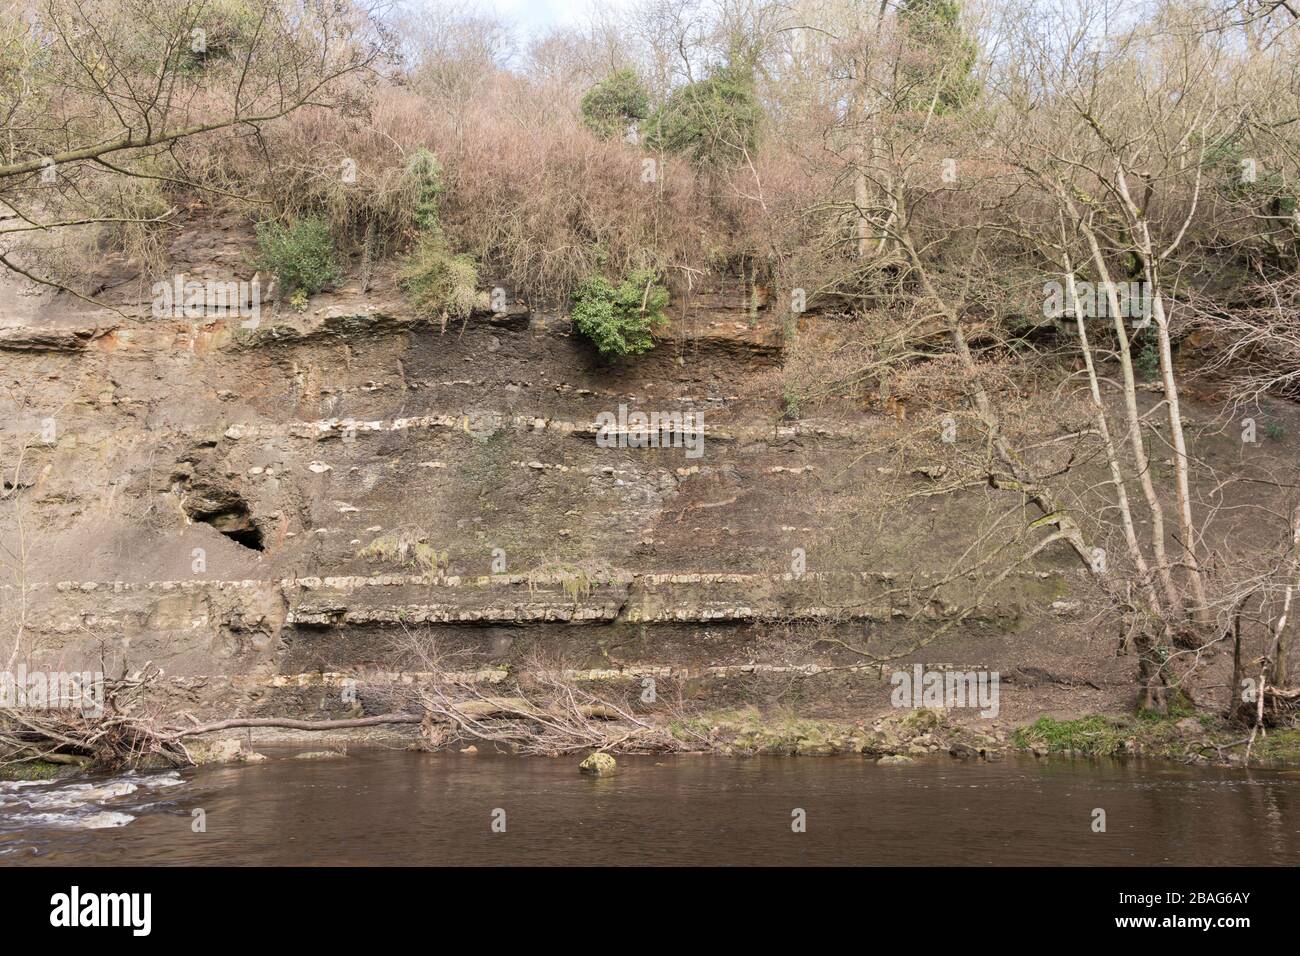 La riva erosa del fiume Munk Esk, mostrando strati geologici, a Grosmont, North Yorkshire, Inghilterra, Regno Unito Foto Stock